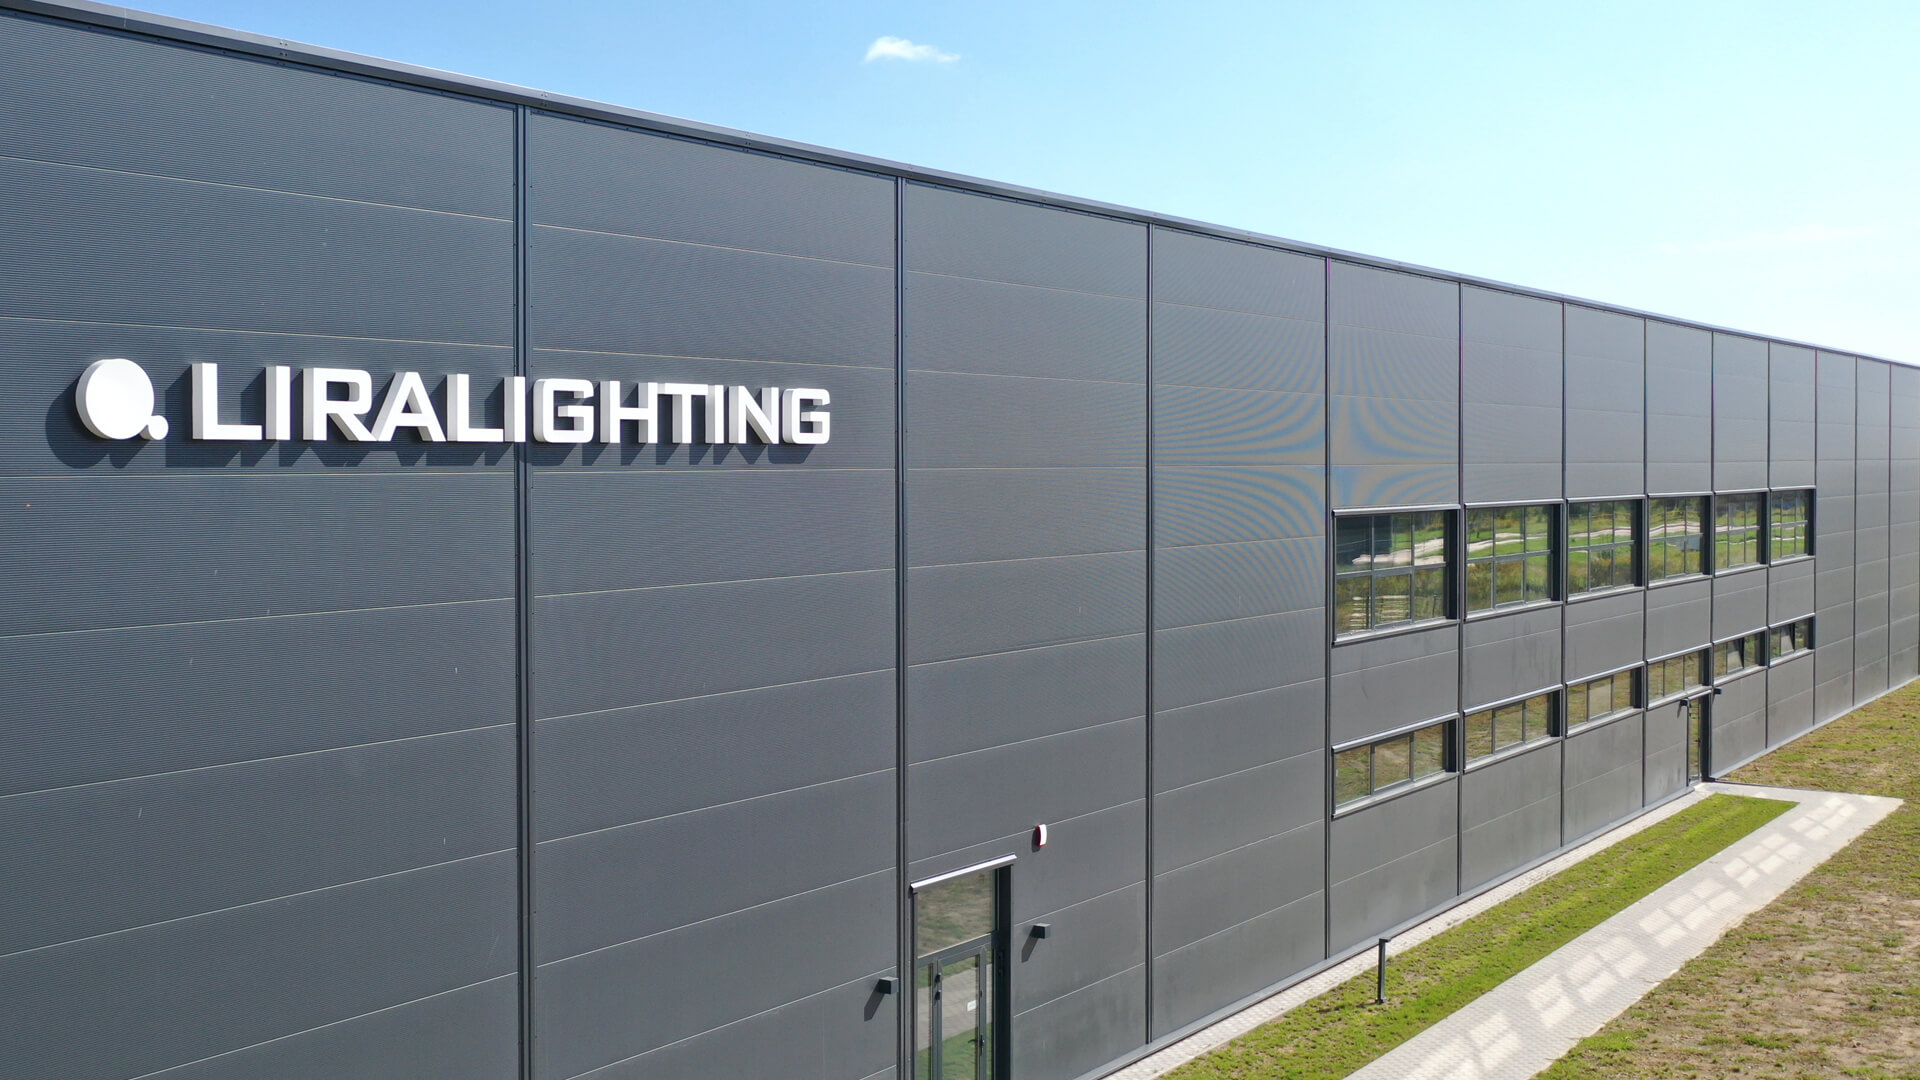 Letras luminosas Liralighting - Letras luminosas 3D sobre nave industrial en blanco.